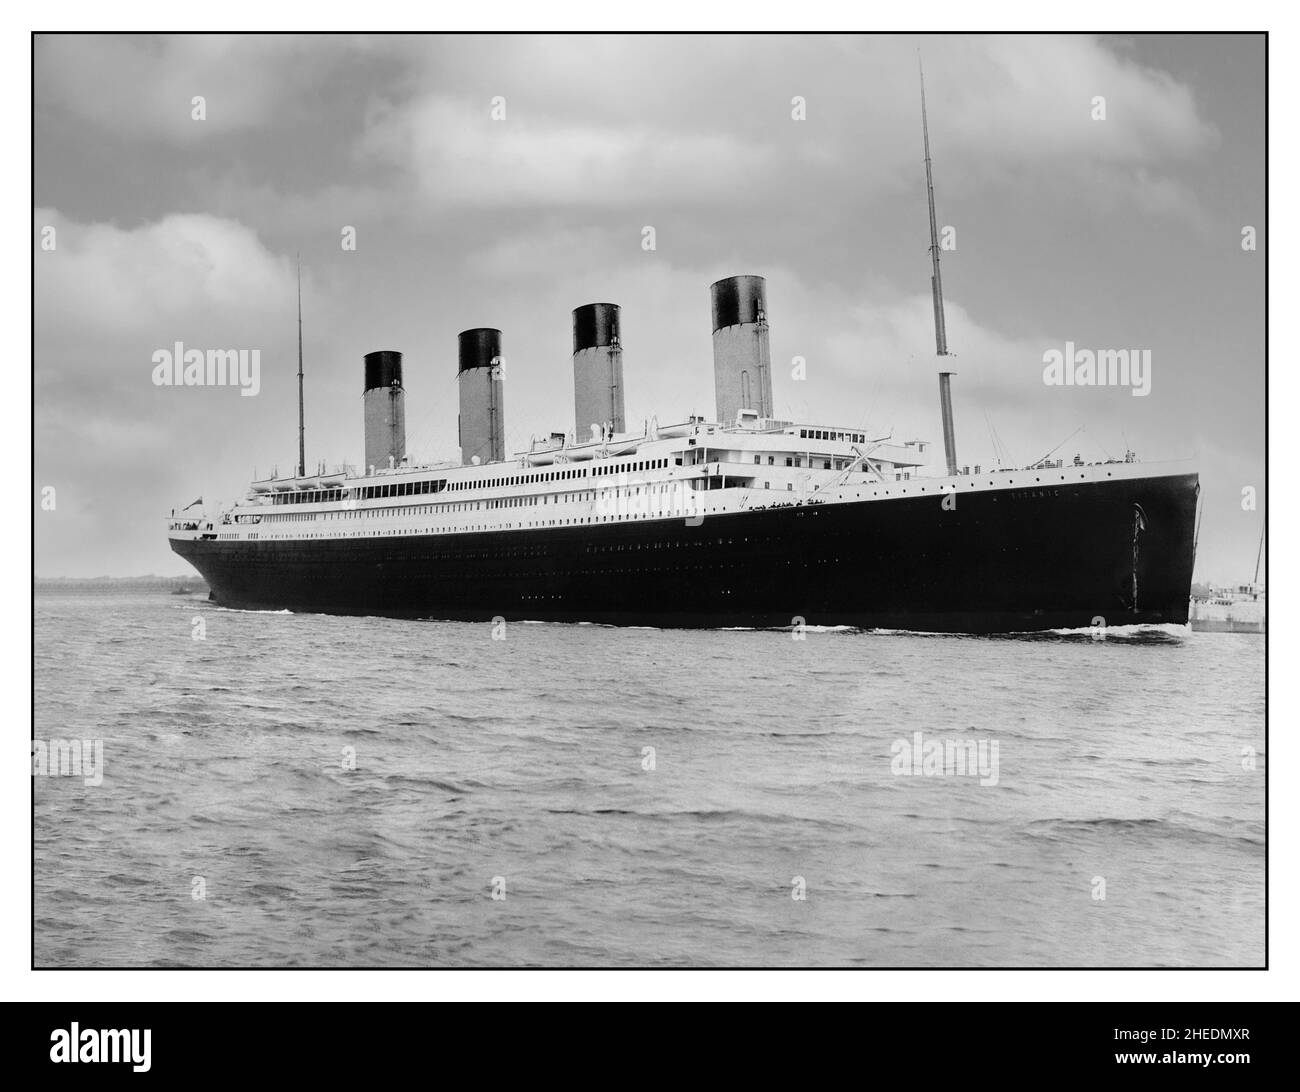 RMS Titanic se prepara para salir de Southampton, para ir a Cherbourg y recoger pasajeros, y luego comenzar su viaje inaugural a Nueva York. Fecha 10 Abril 1912 RMS Titanic 10th Abril 1912 MAIDEN VOYAGE Saliendo, zarpando desde Southampton UK en su fatídico viaje de navegación a Nueva York donde se hundió trágicamente 5 días más tarde el 15th de abril con una enorme pérdida de vida después de golpear un iceberg Foto de stock